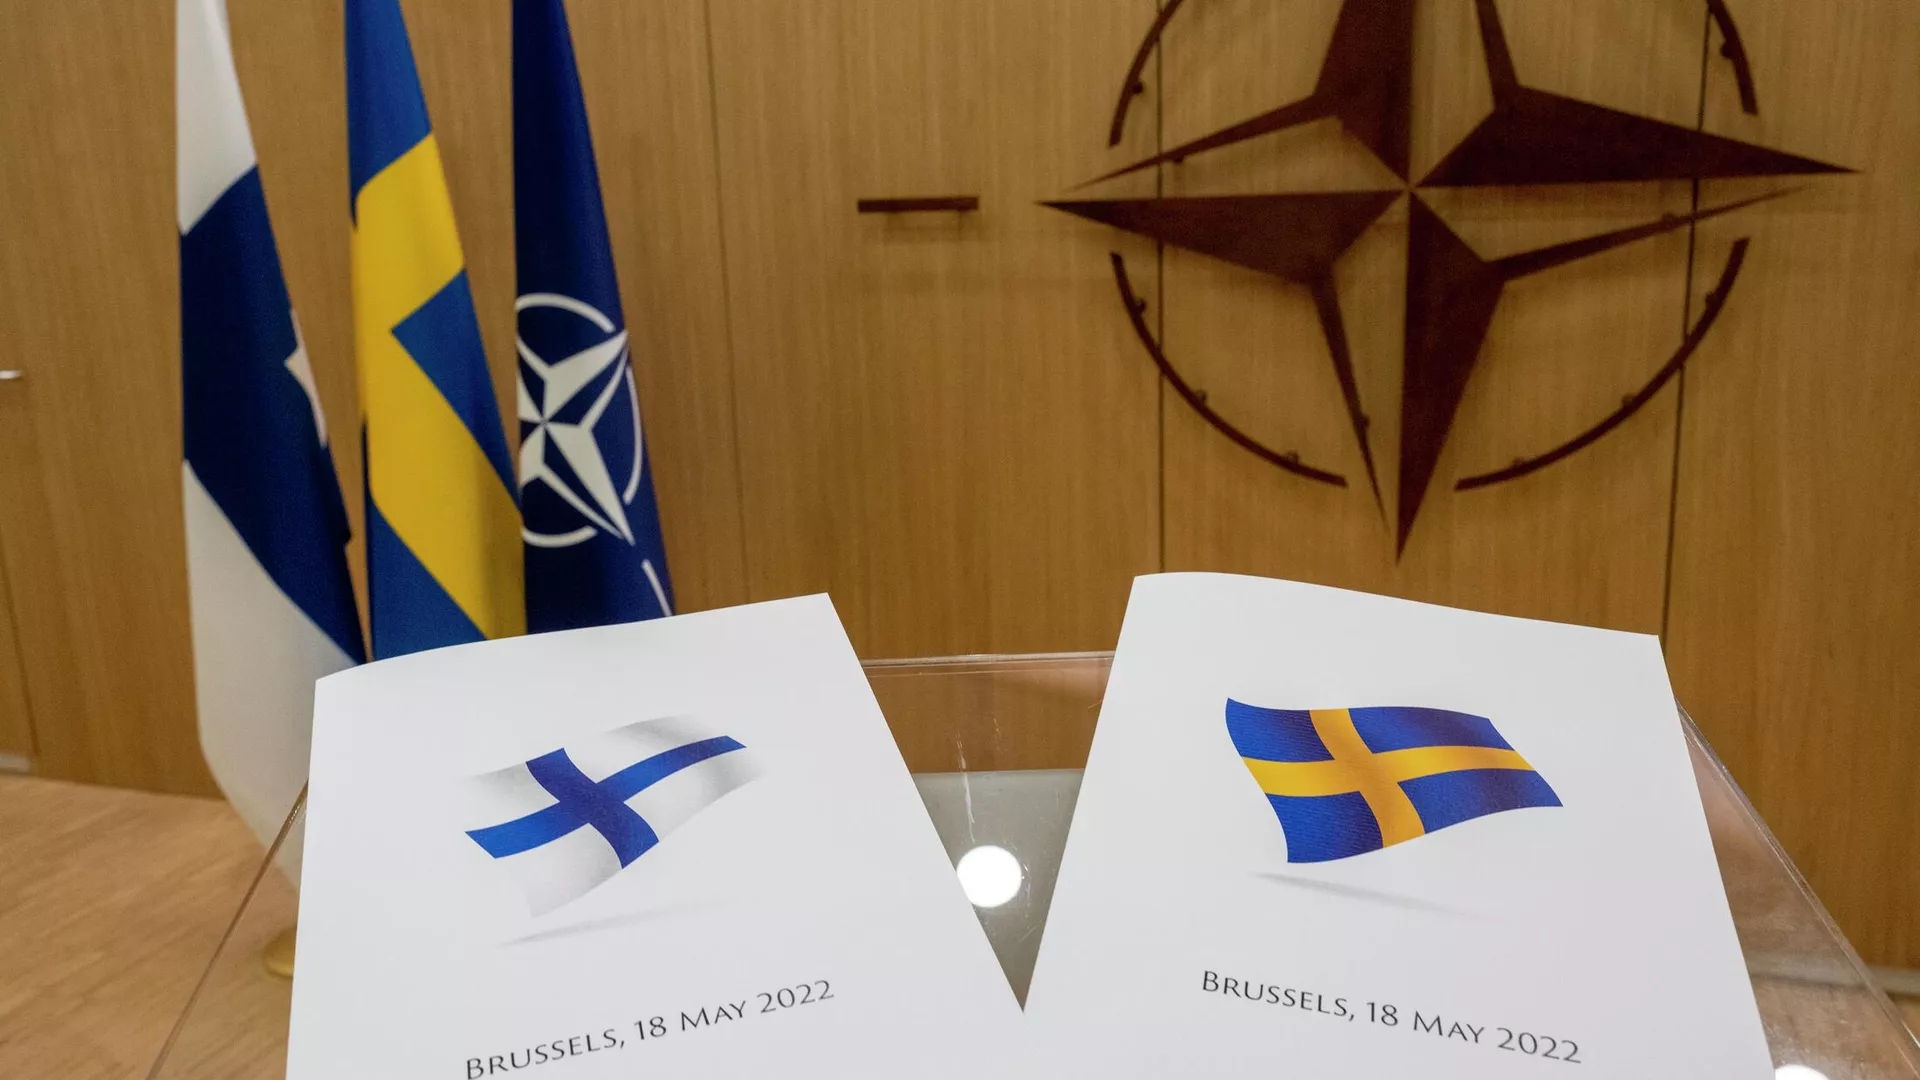 Североатлантический Альянс НАТО. Швеция и Финляндия вступление в НАТО. Финляндия в НАТО 2022. Вступление Финляндии и Швеции в НАТО 2022.